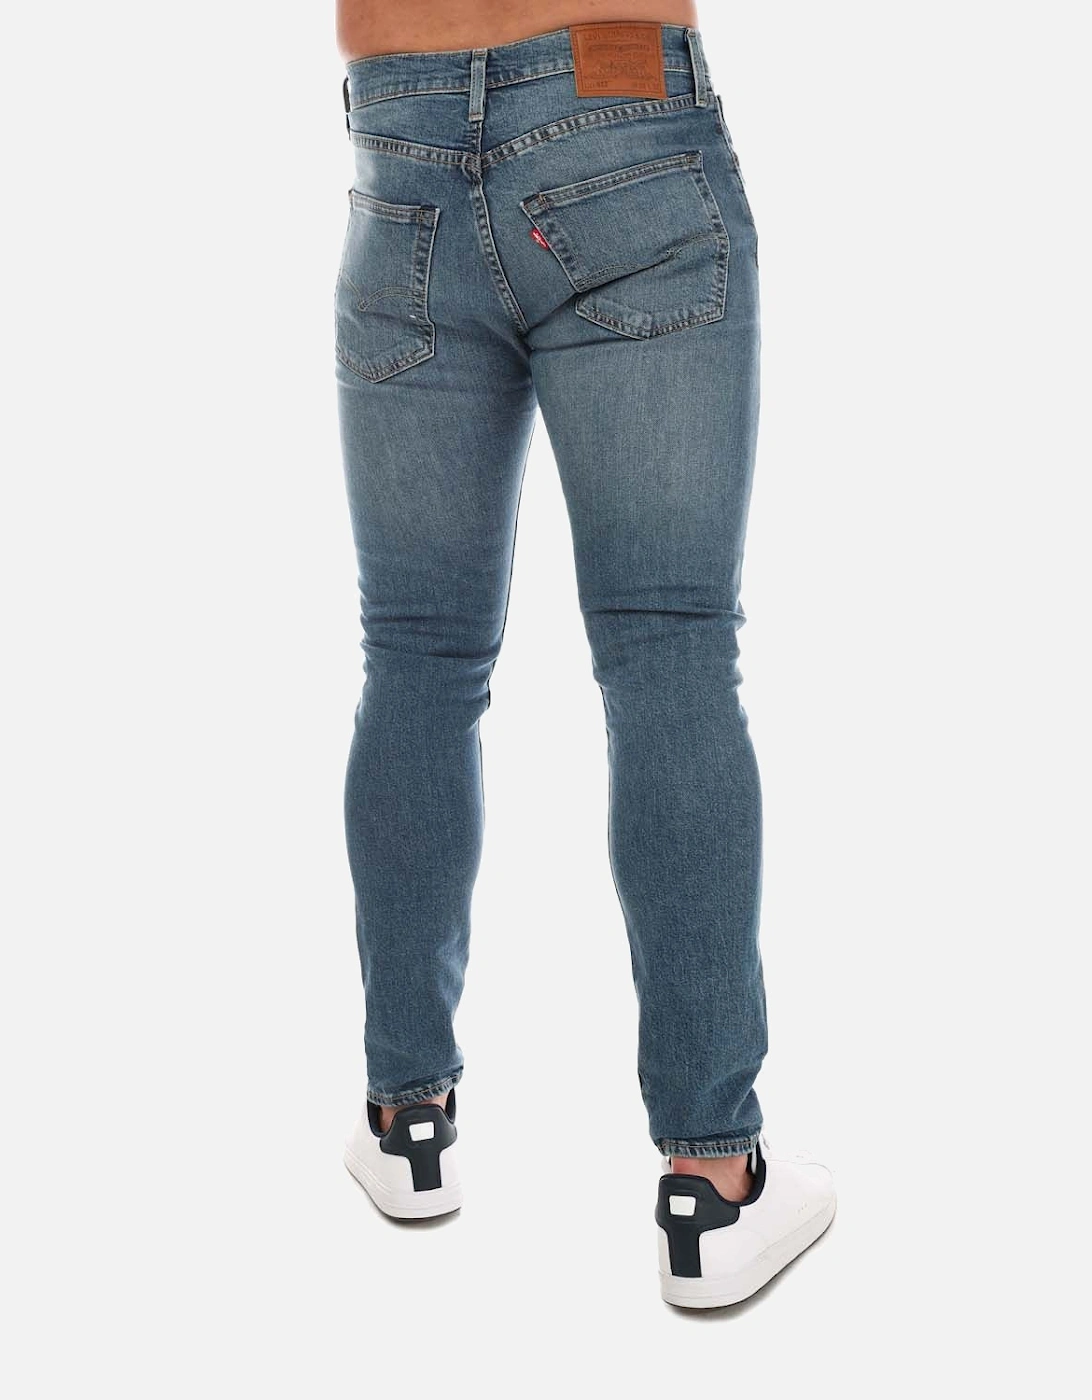 Mens 512 Slim Taper Jeans